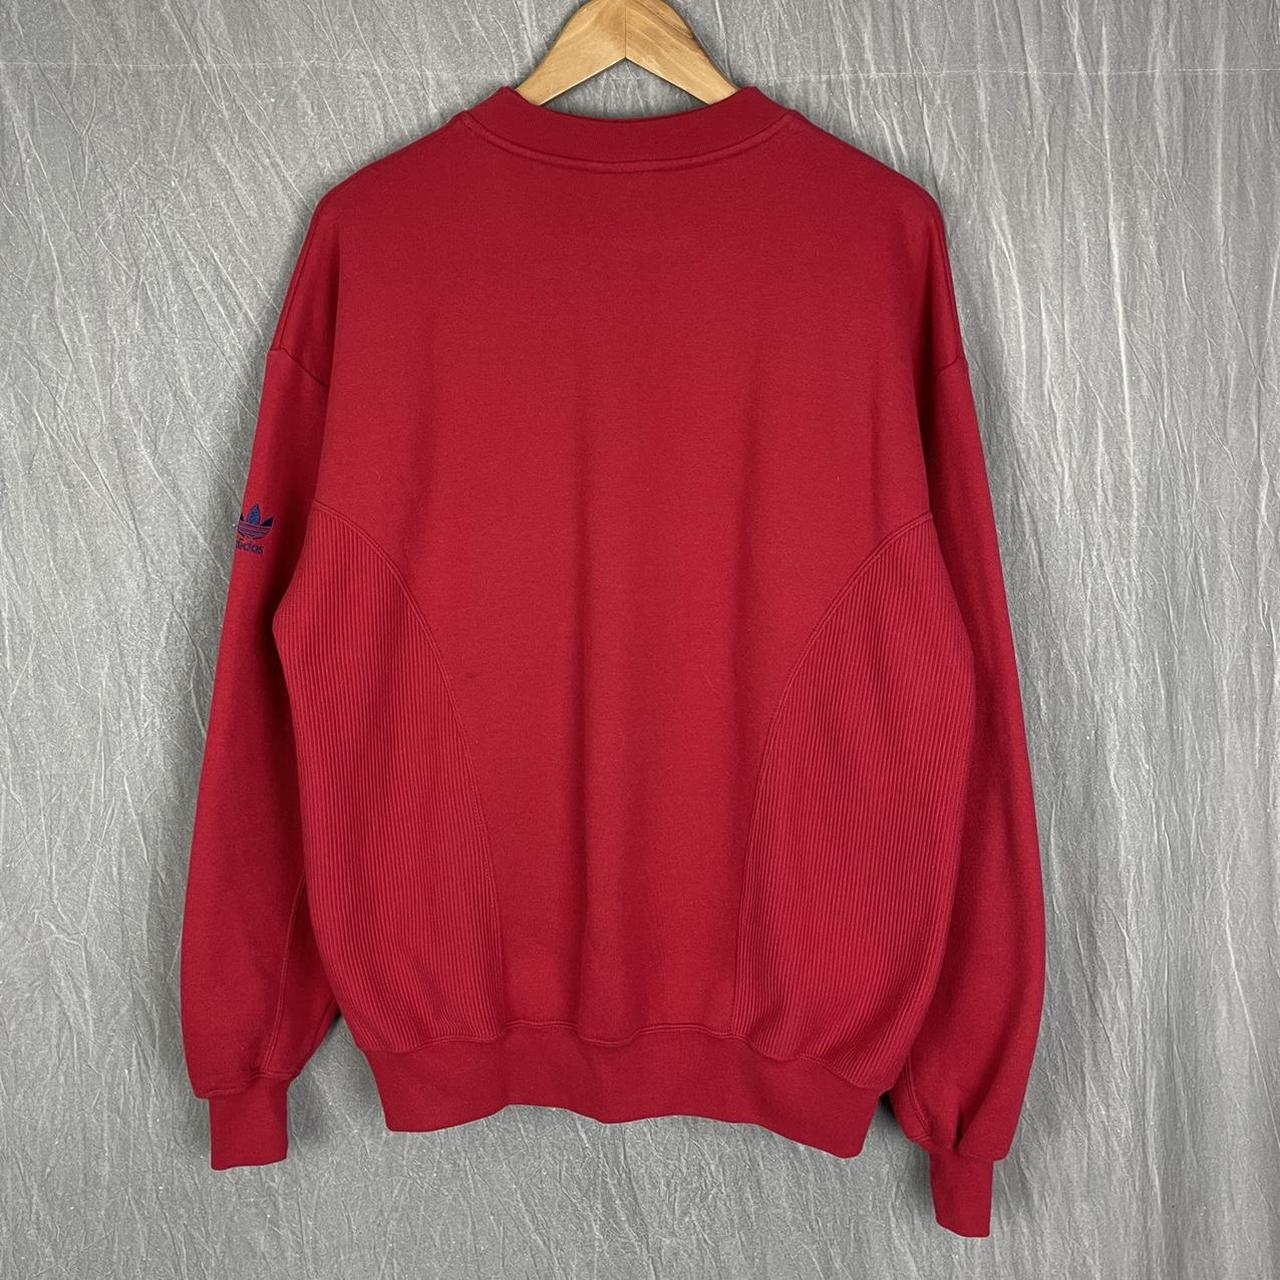 Product Image 2 - Vintage embroidered Adidas sweatshirt 

•FREE